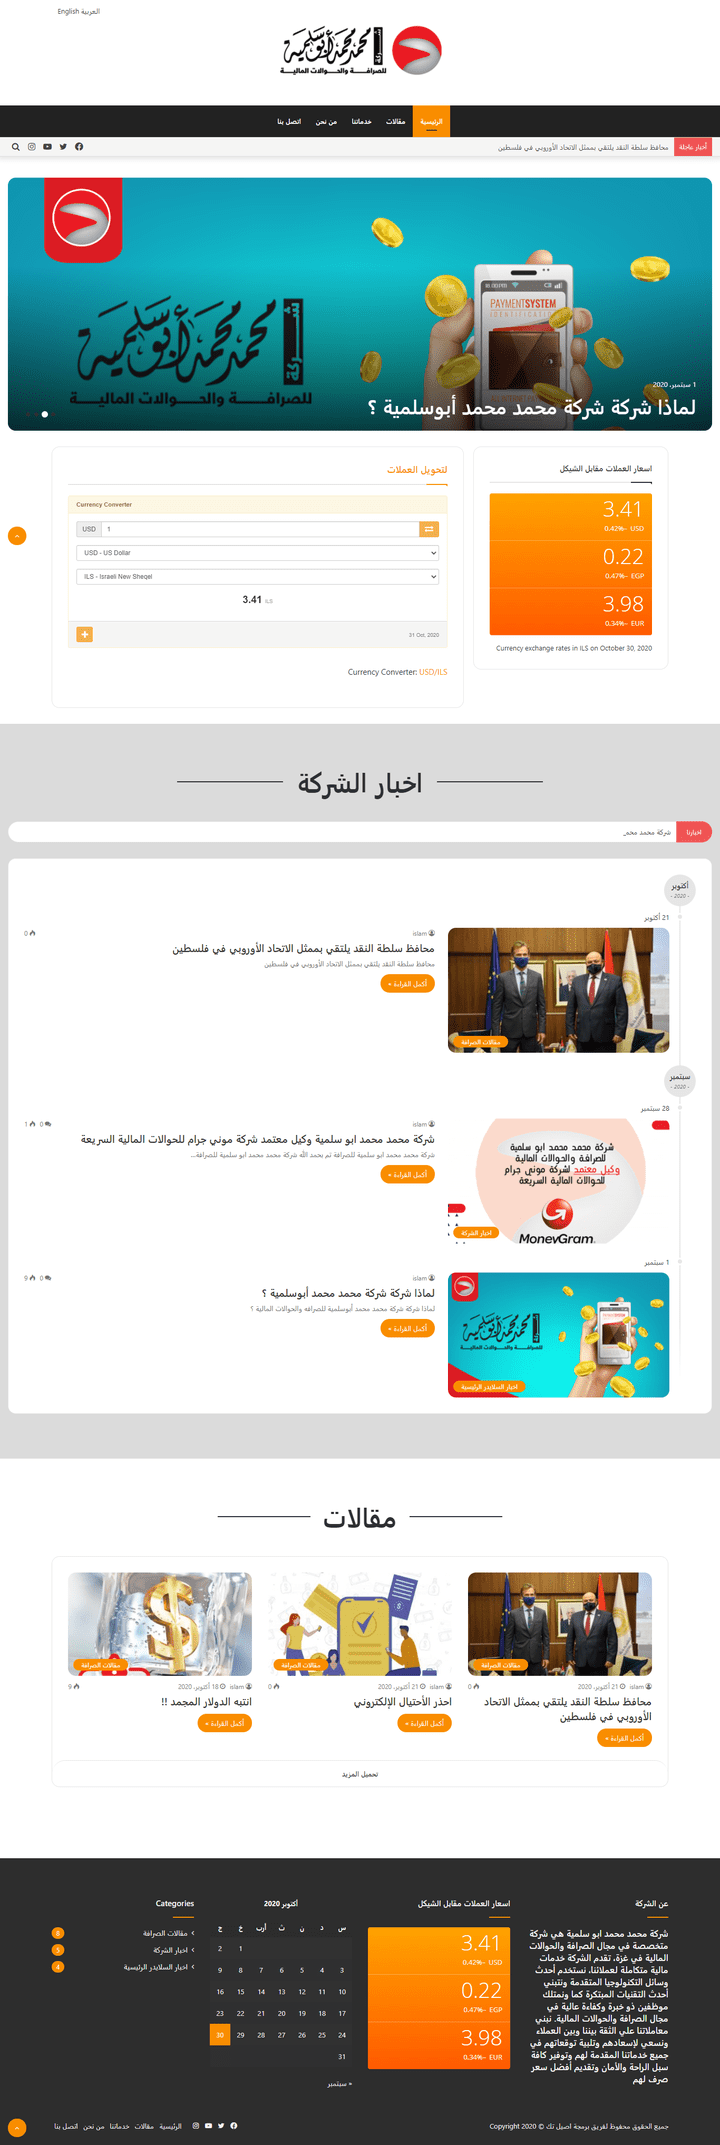 موقع شركة محمد محمد ابو سلمية للصرافة والحوالات المالية